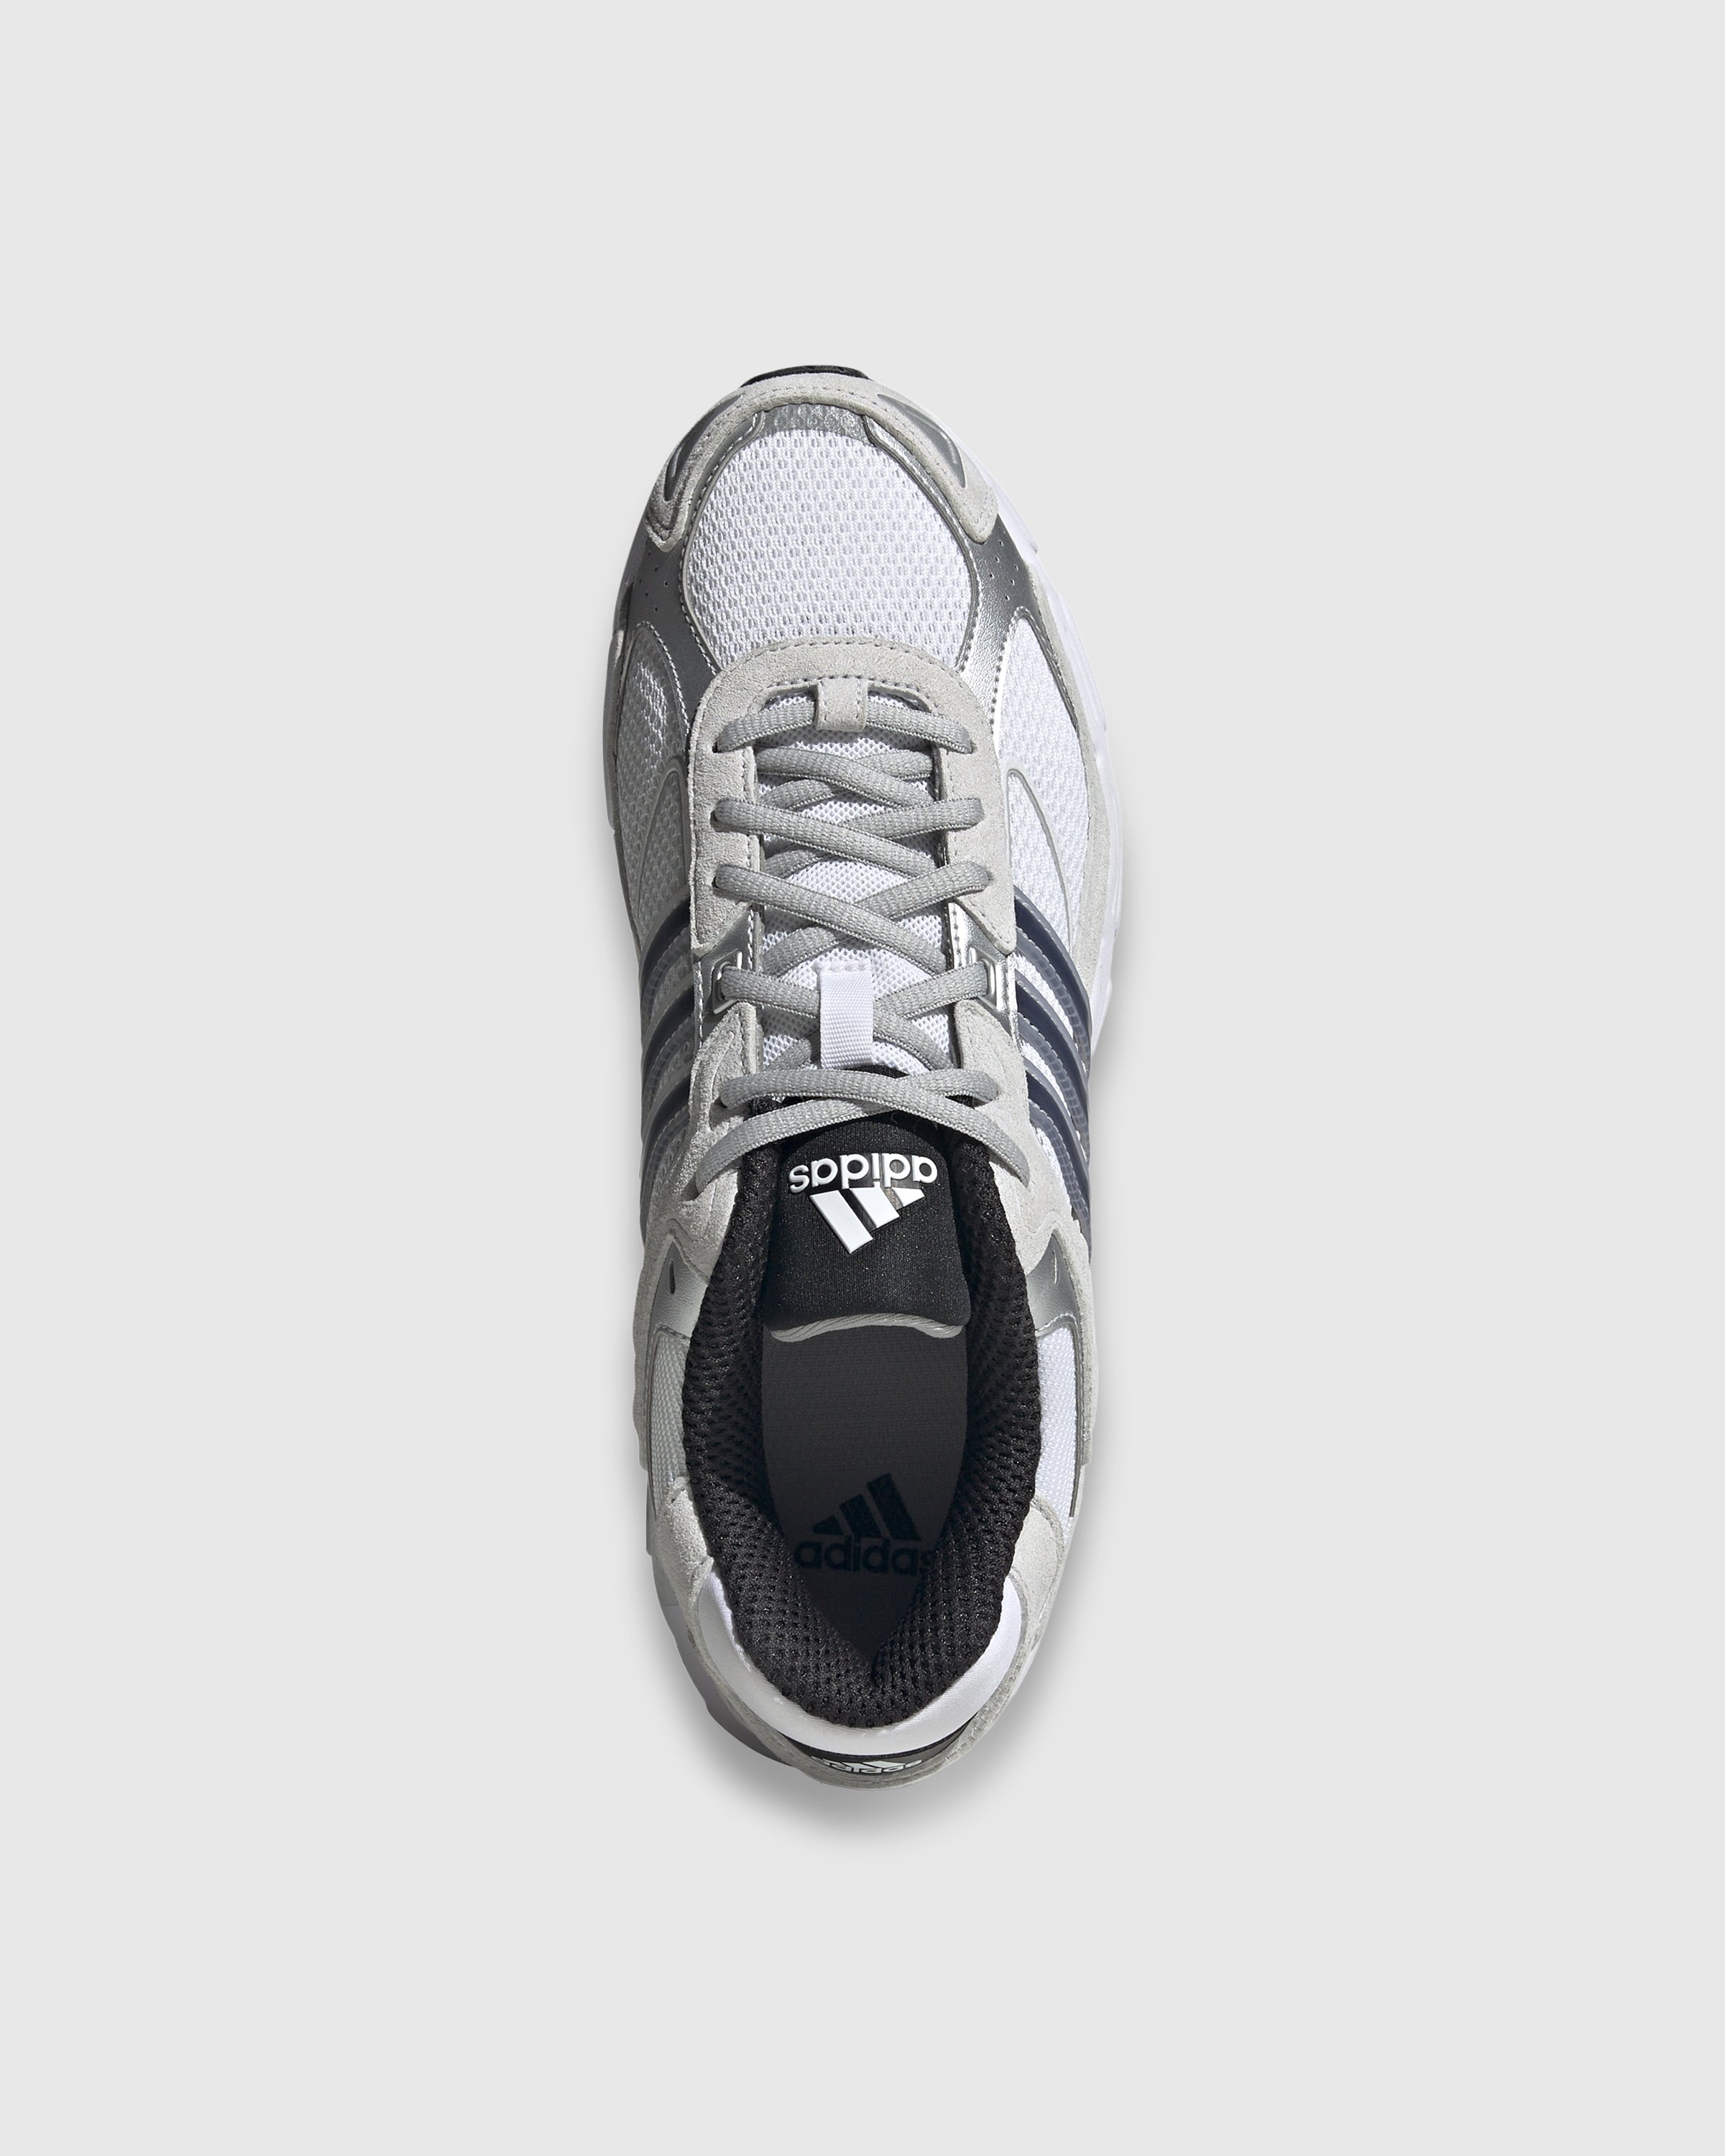 Adidas - Response CL White/Black - Footwear - White - Image 5